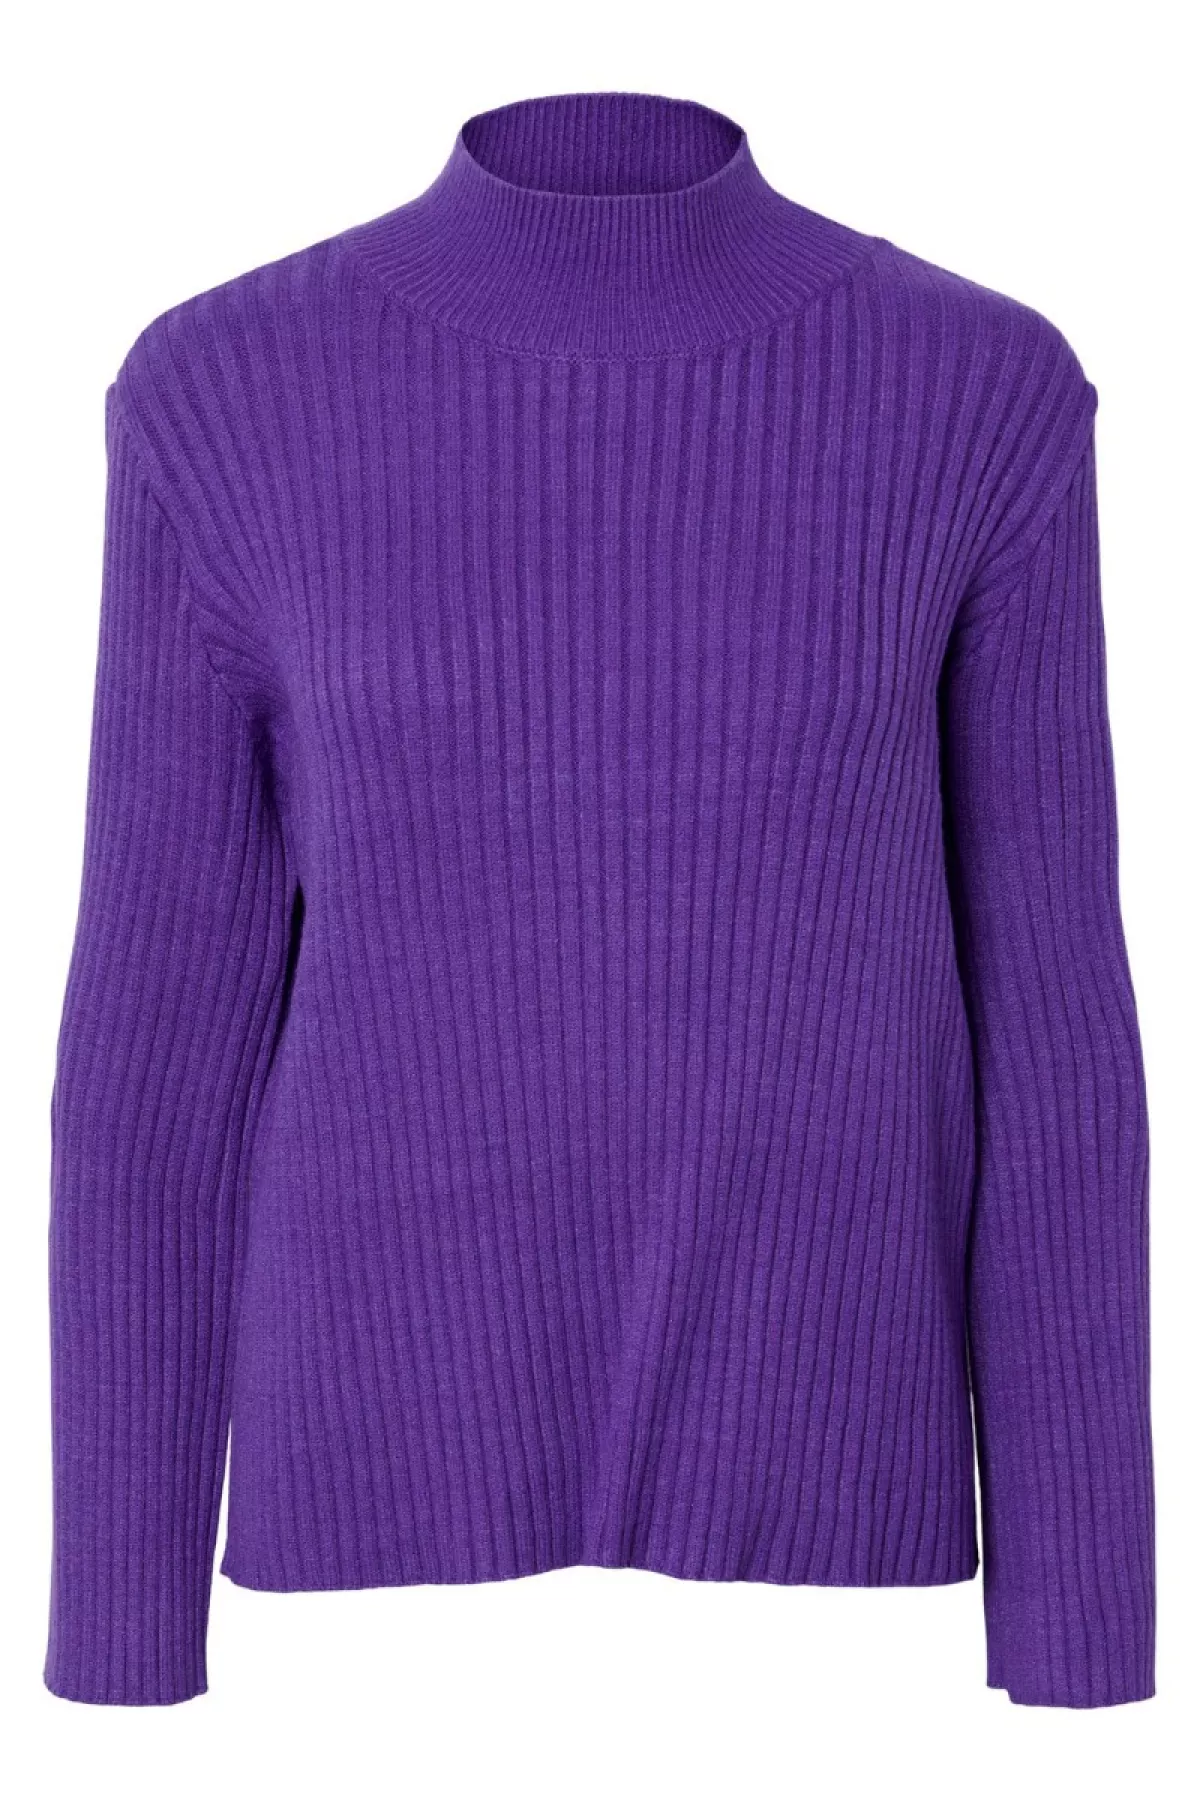 #3 - Y.A.S - Strik - Asta LS Knit Pullover - Prism Violet